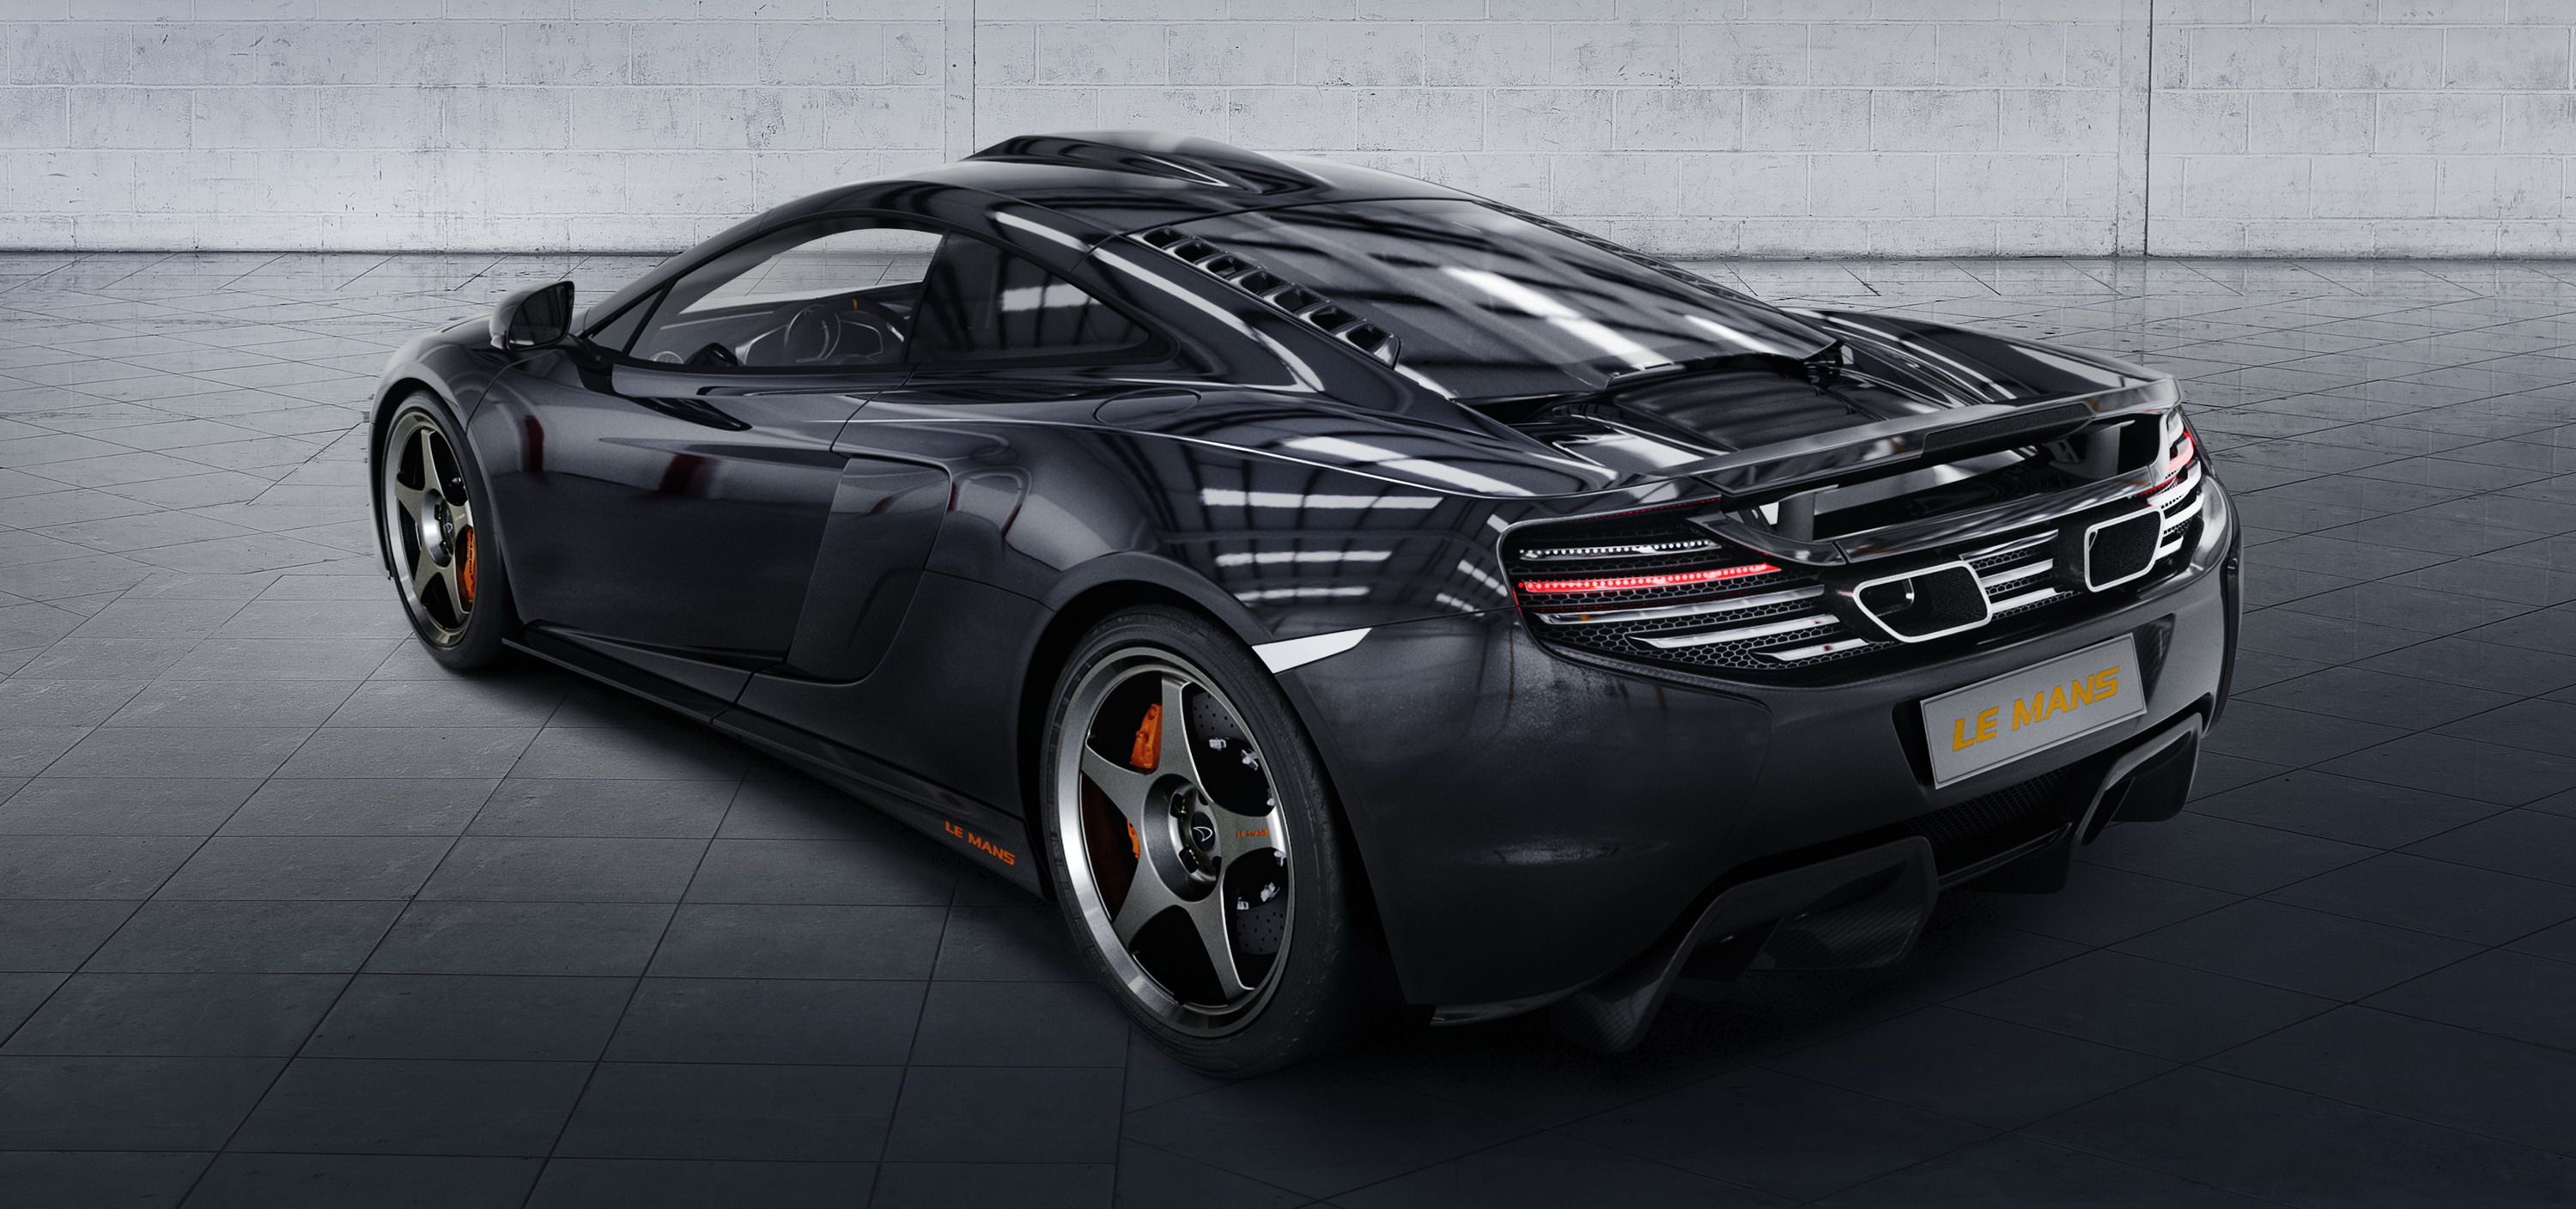 2015 McLaren 650S Le Mans Limited Edition